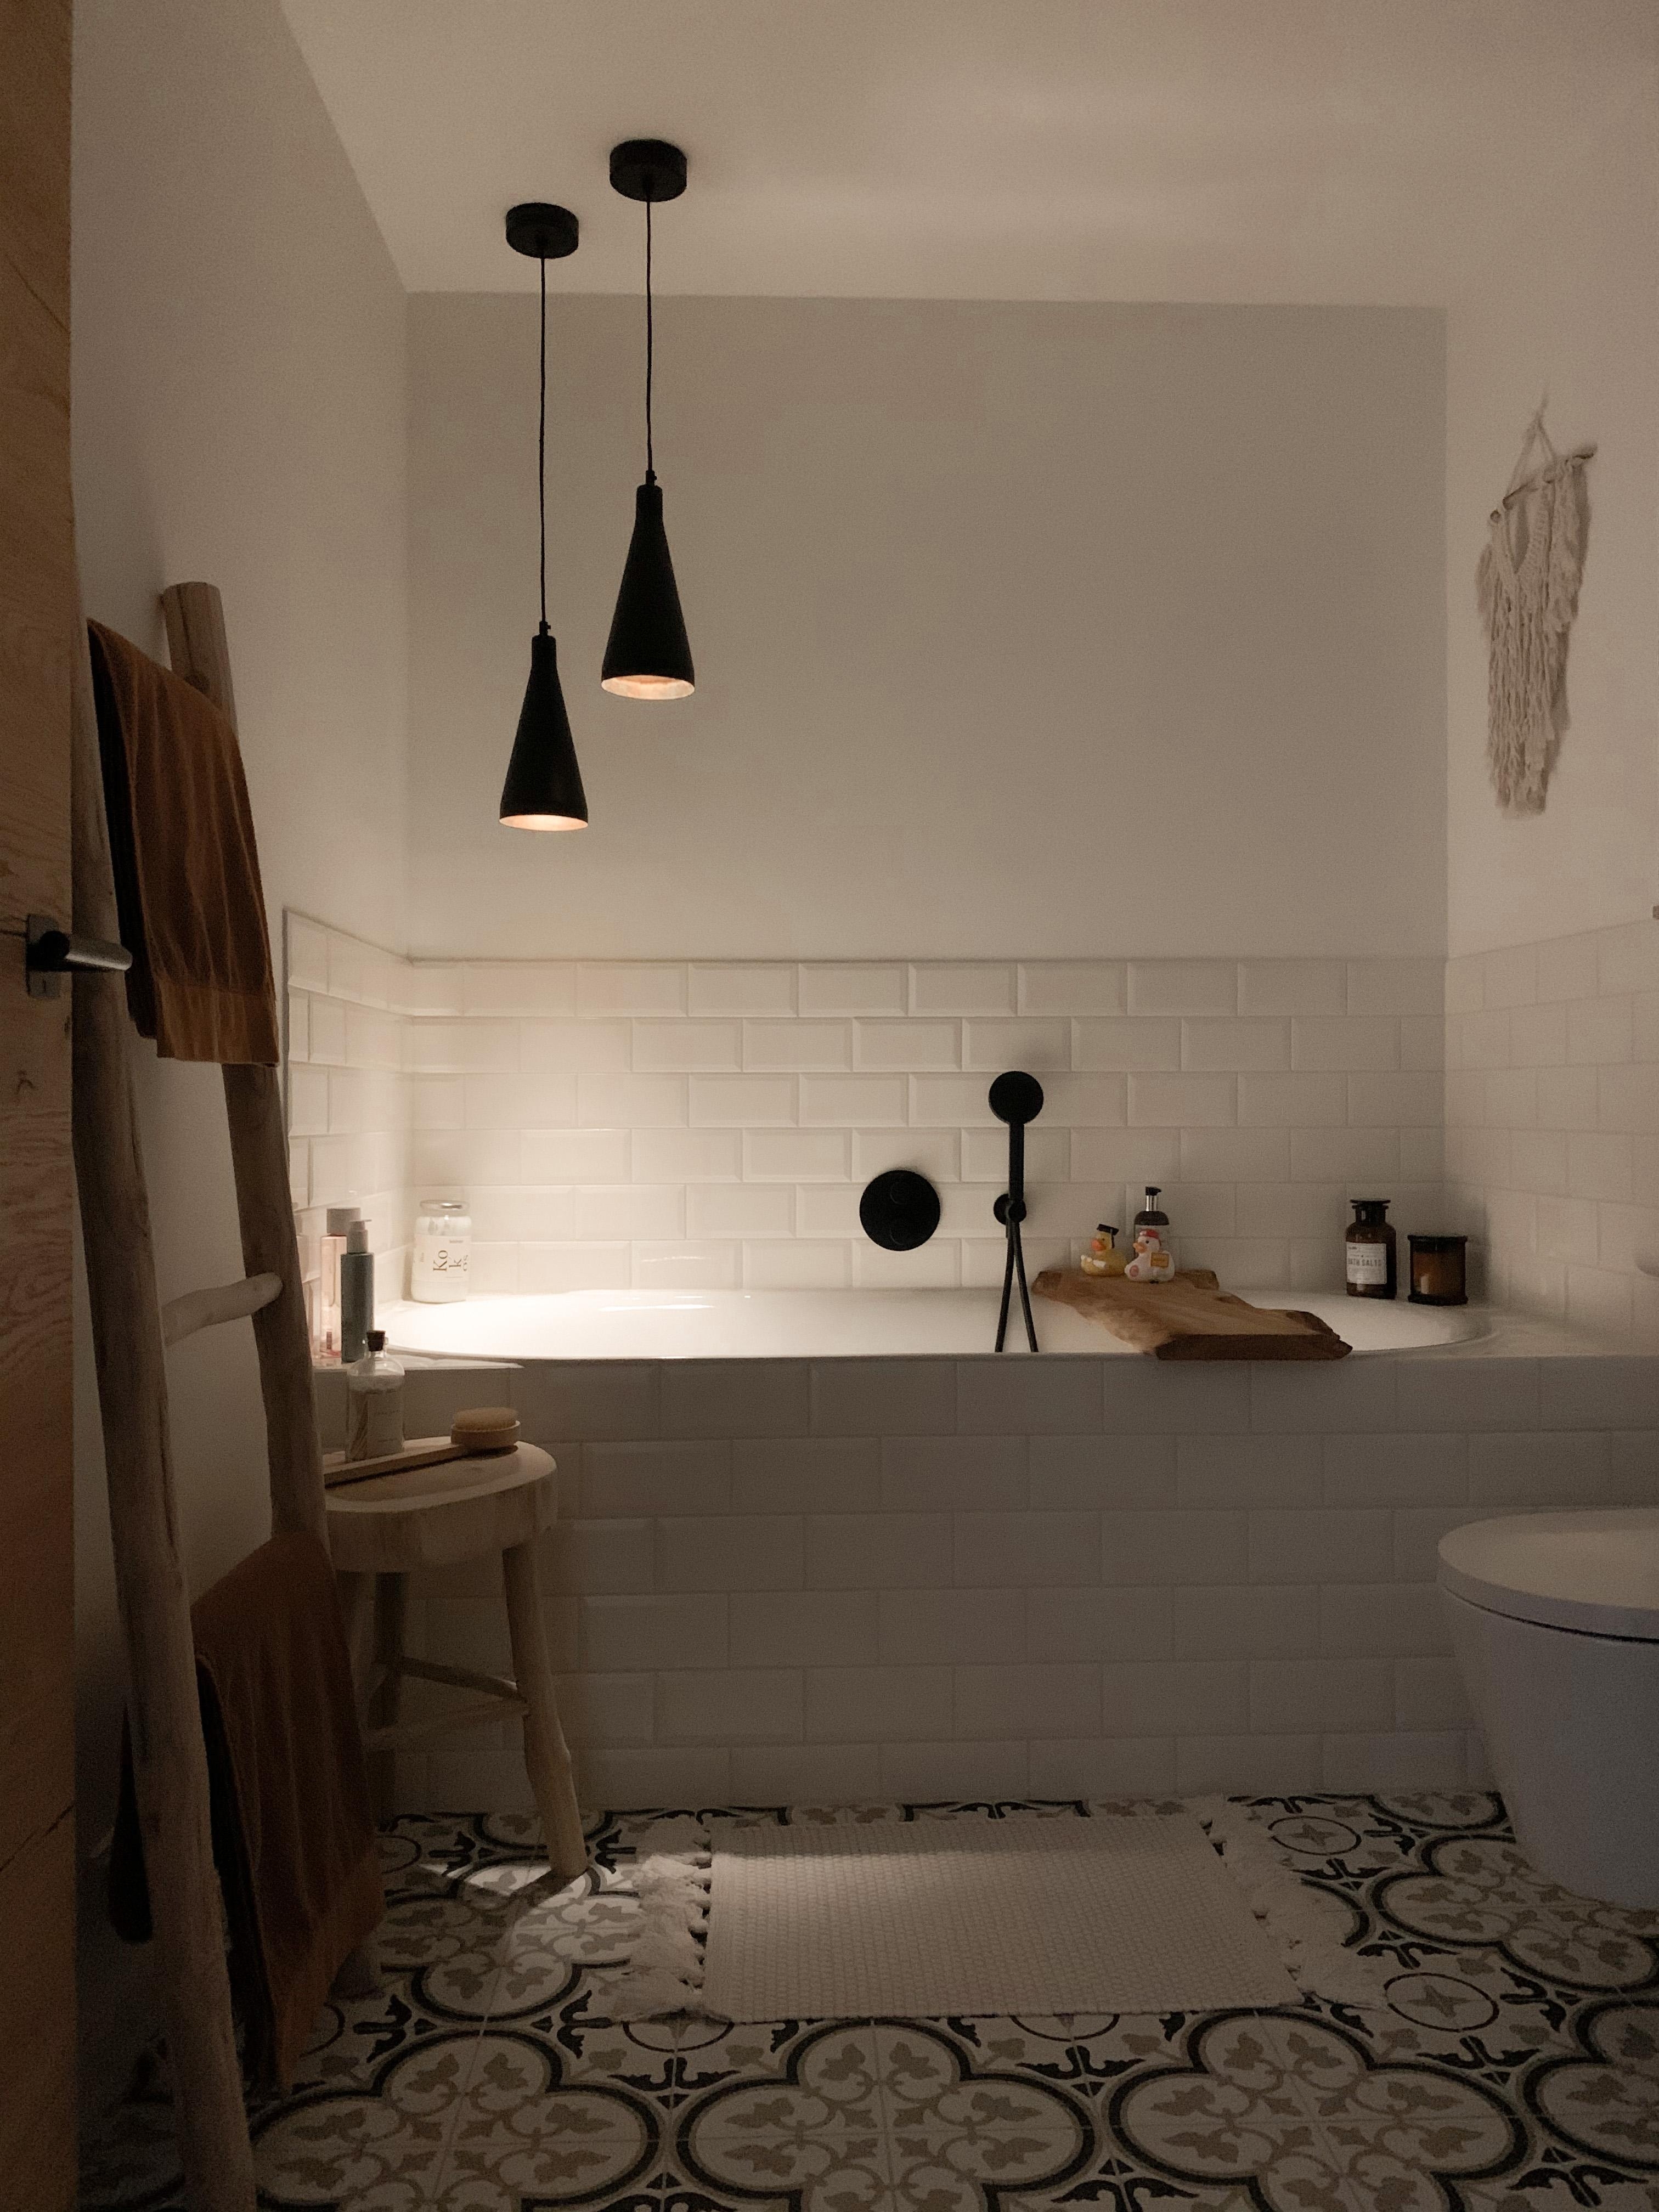 Die zwei Lampen über der Wanne machen das Baden total gemütlich.🛁🤍
•
#badezimmer #wannenbad #badezimmerinspo